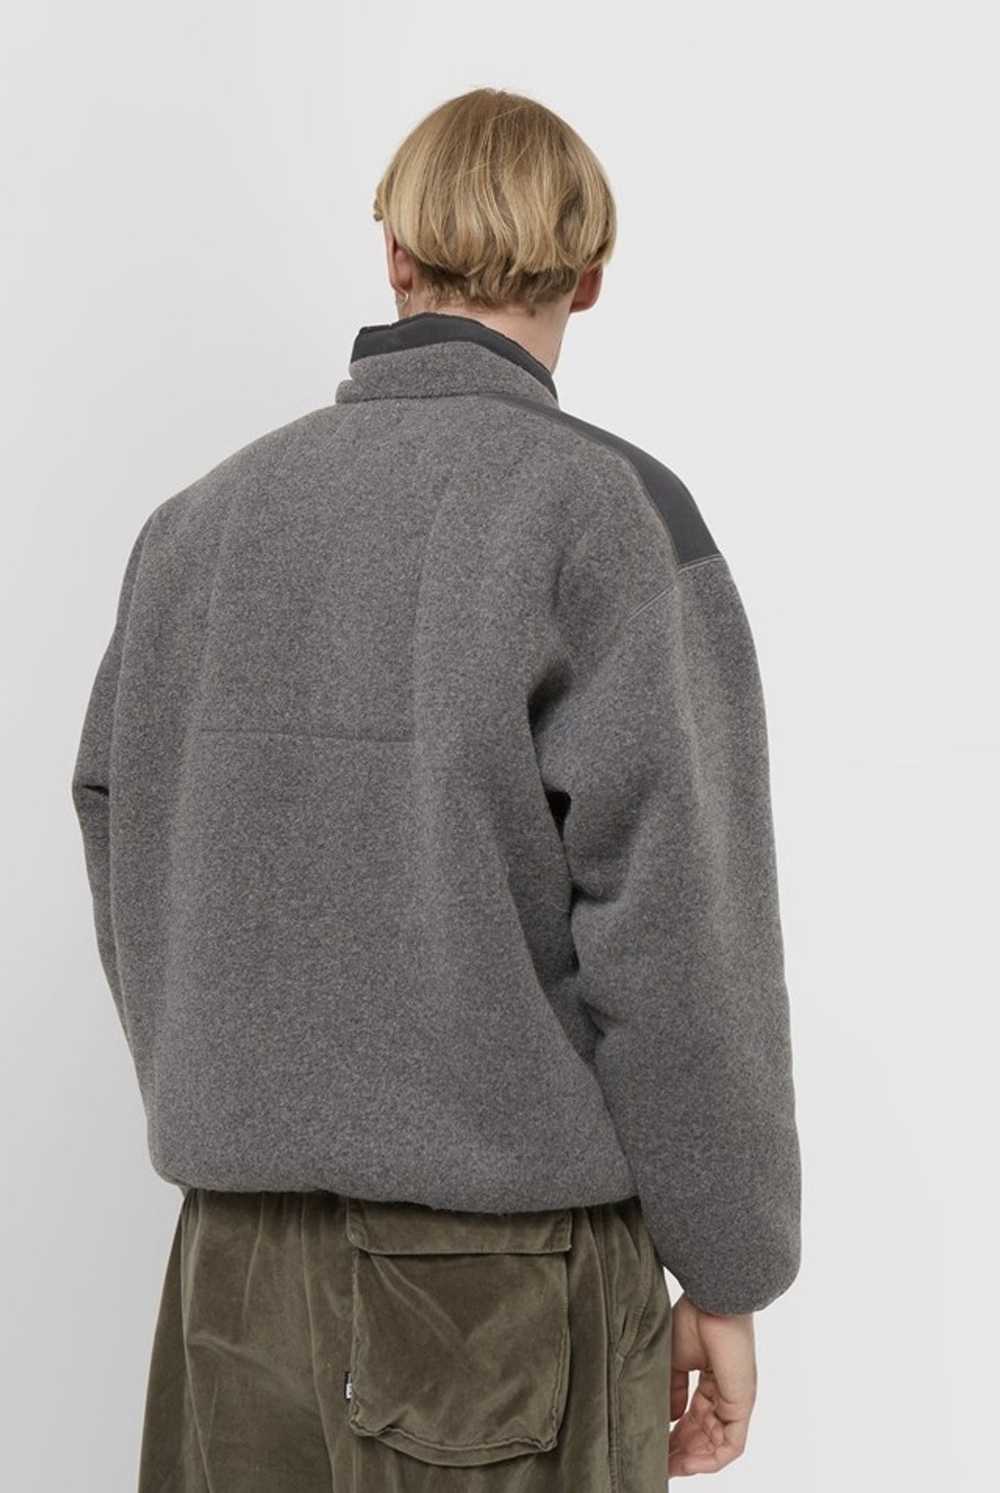 Cav Empt Grey Furry Back Fleece Zip Up - image 2